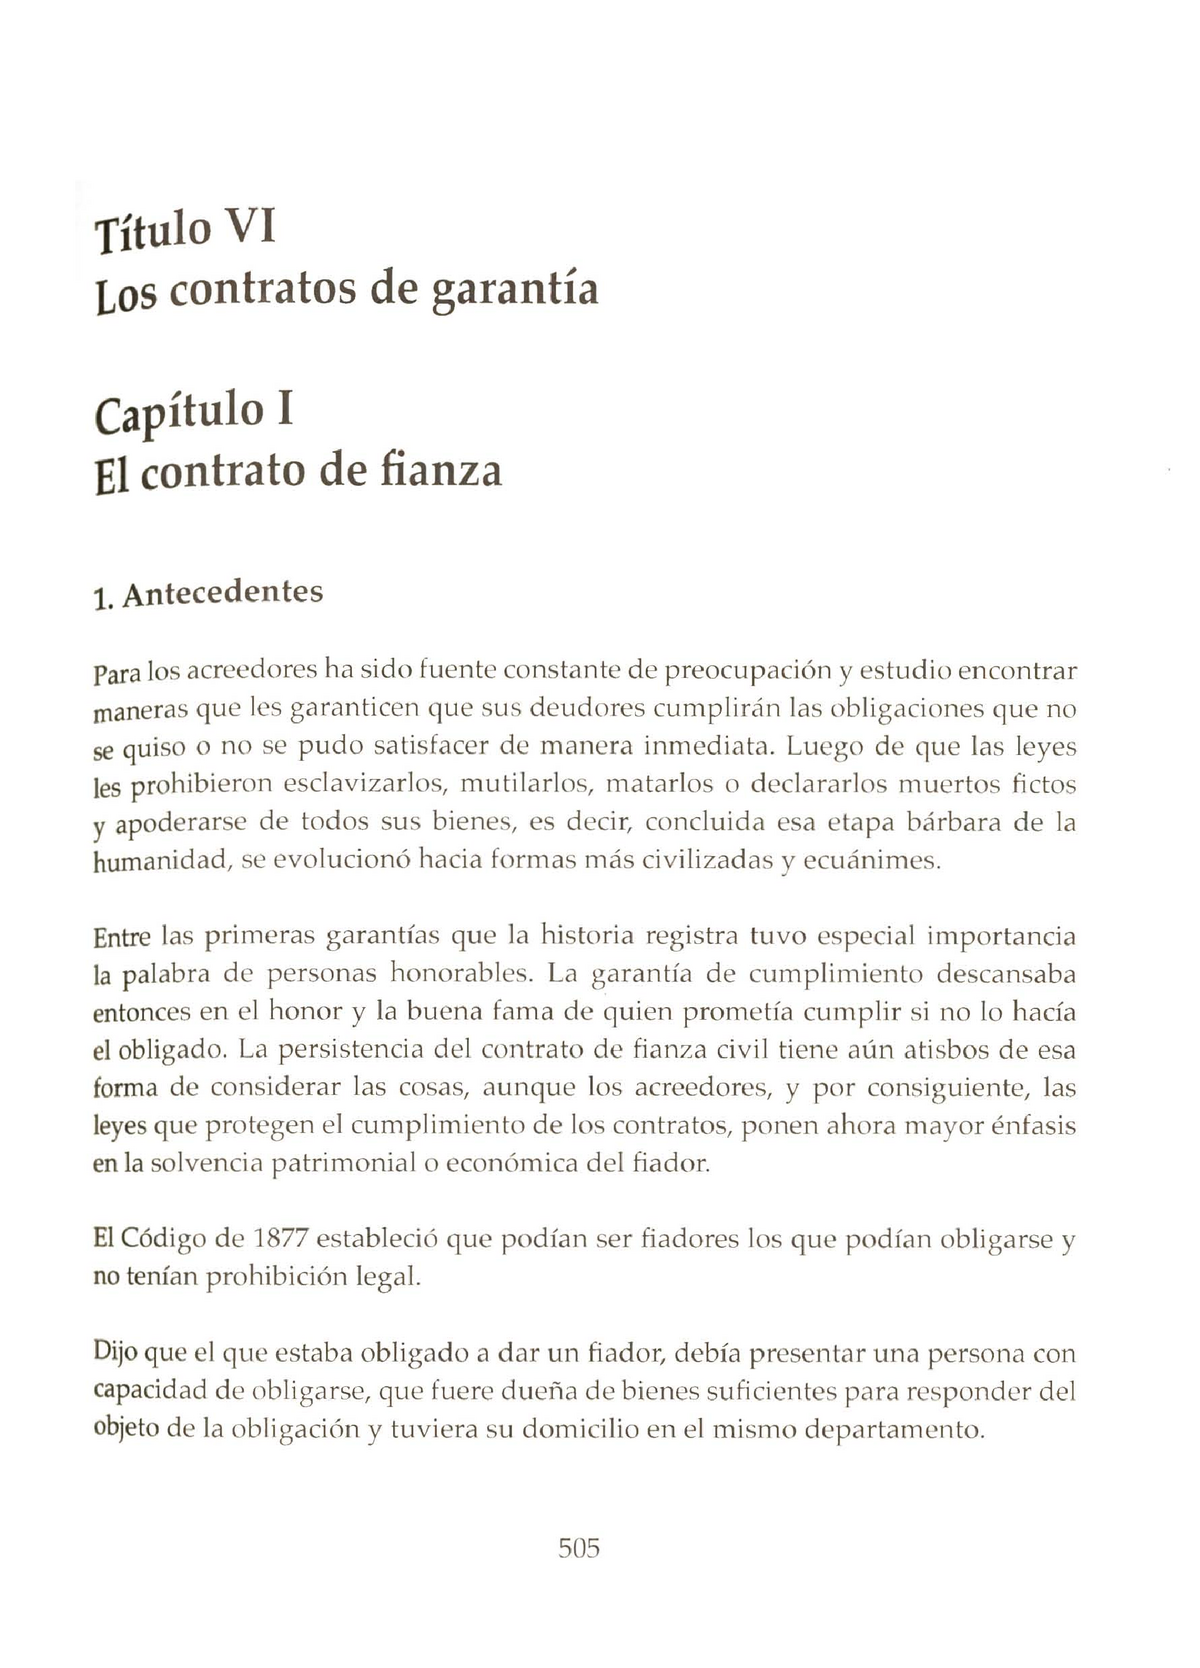 Contratos De Garantía Titulo Vi Los Contratos De Garantia Capitulo I Ei Contrato De Fianza 1 0961